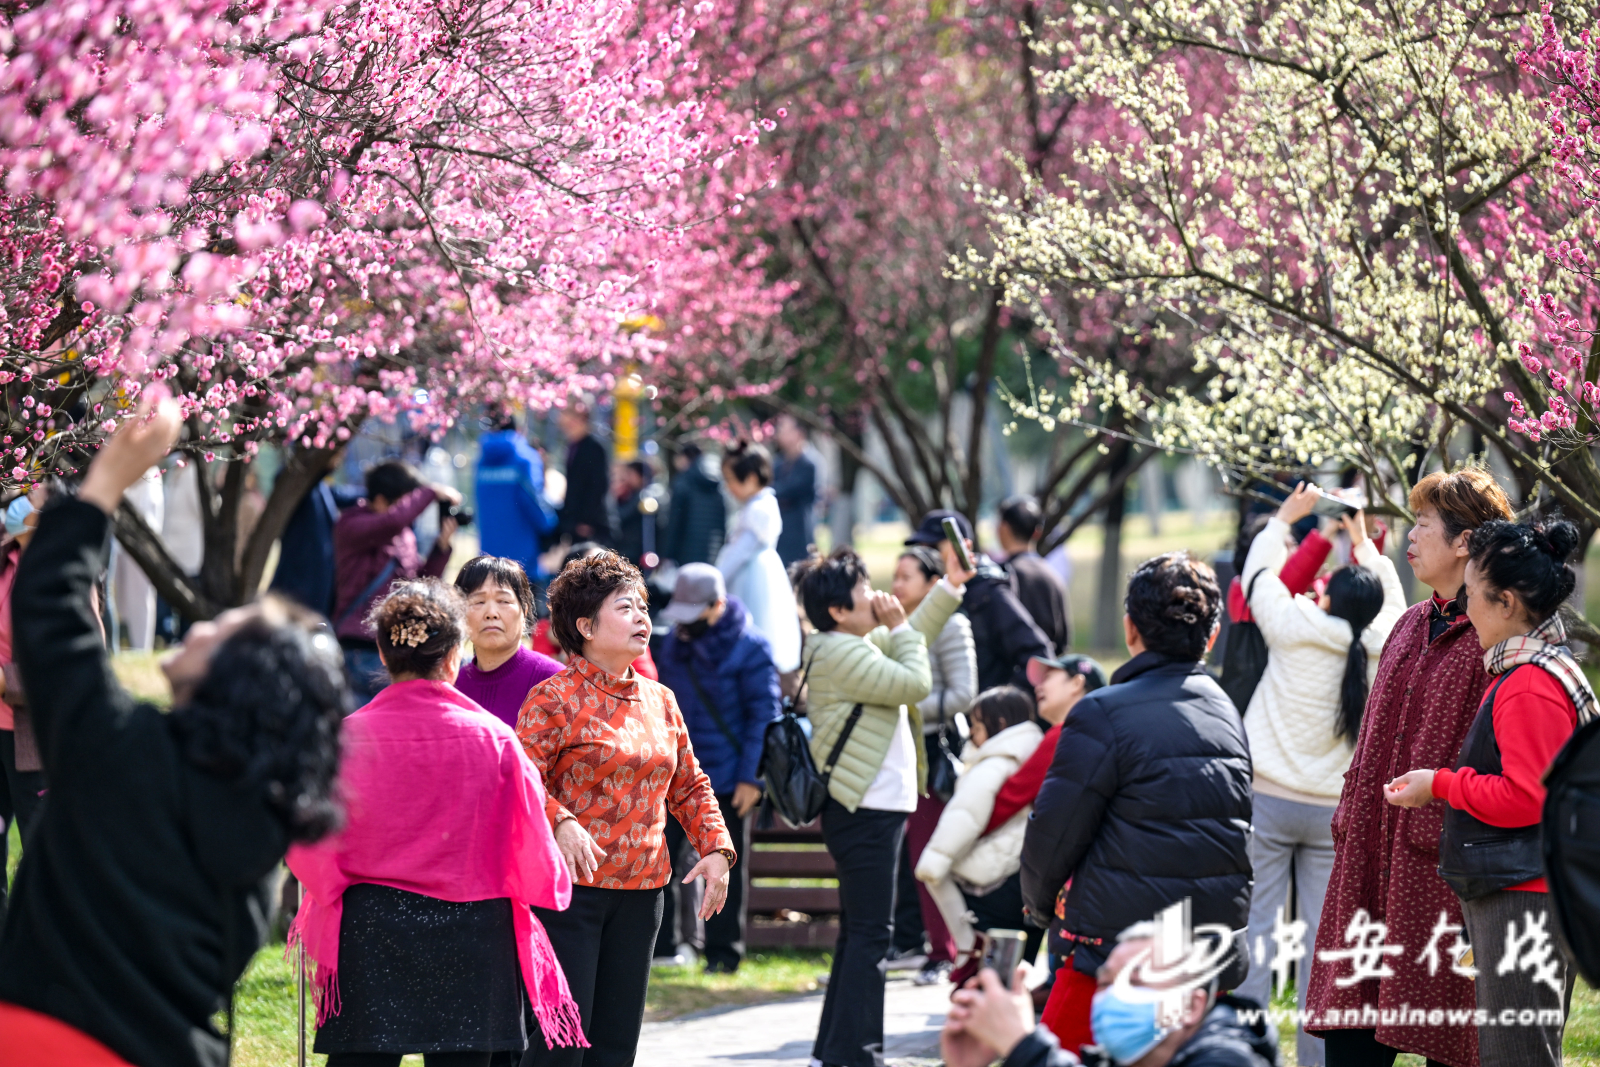 2月17日，阳光正好，合肥市蜀山区绿轴公园已经铺上片片红霞，朵朵俏丽的梅花在枝头绽放，不少市民结伴出游，在梅林中打卡拍照.jpg